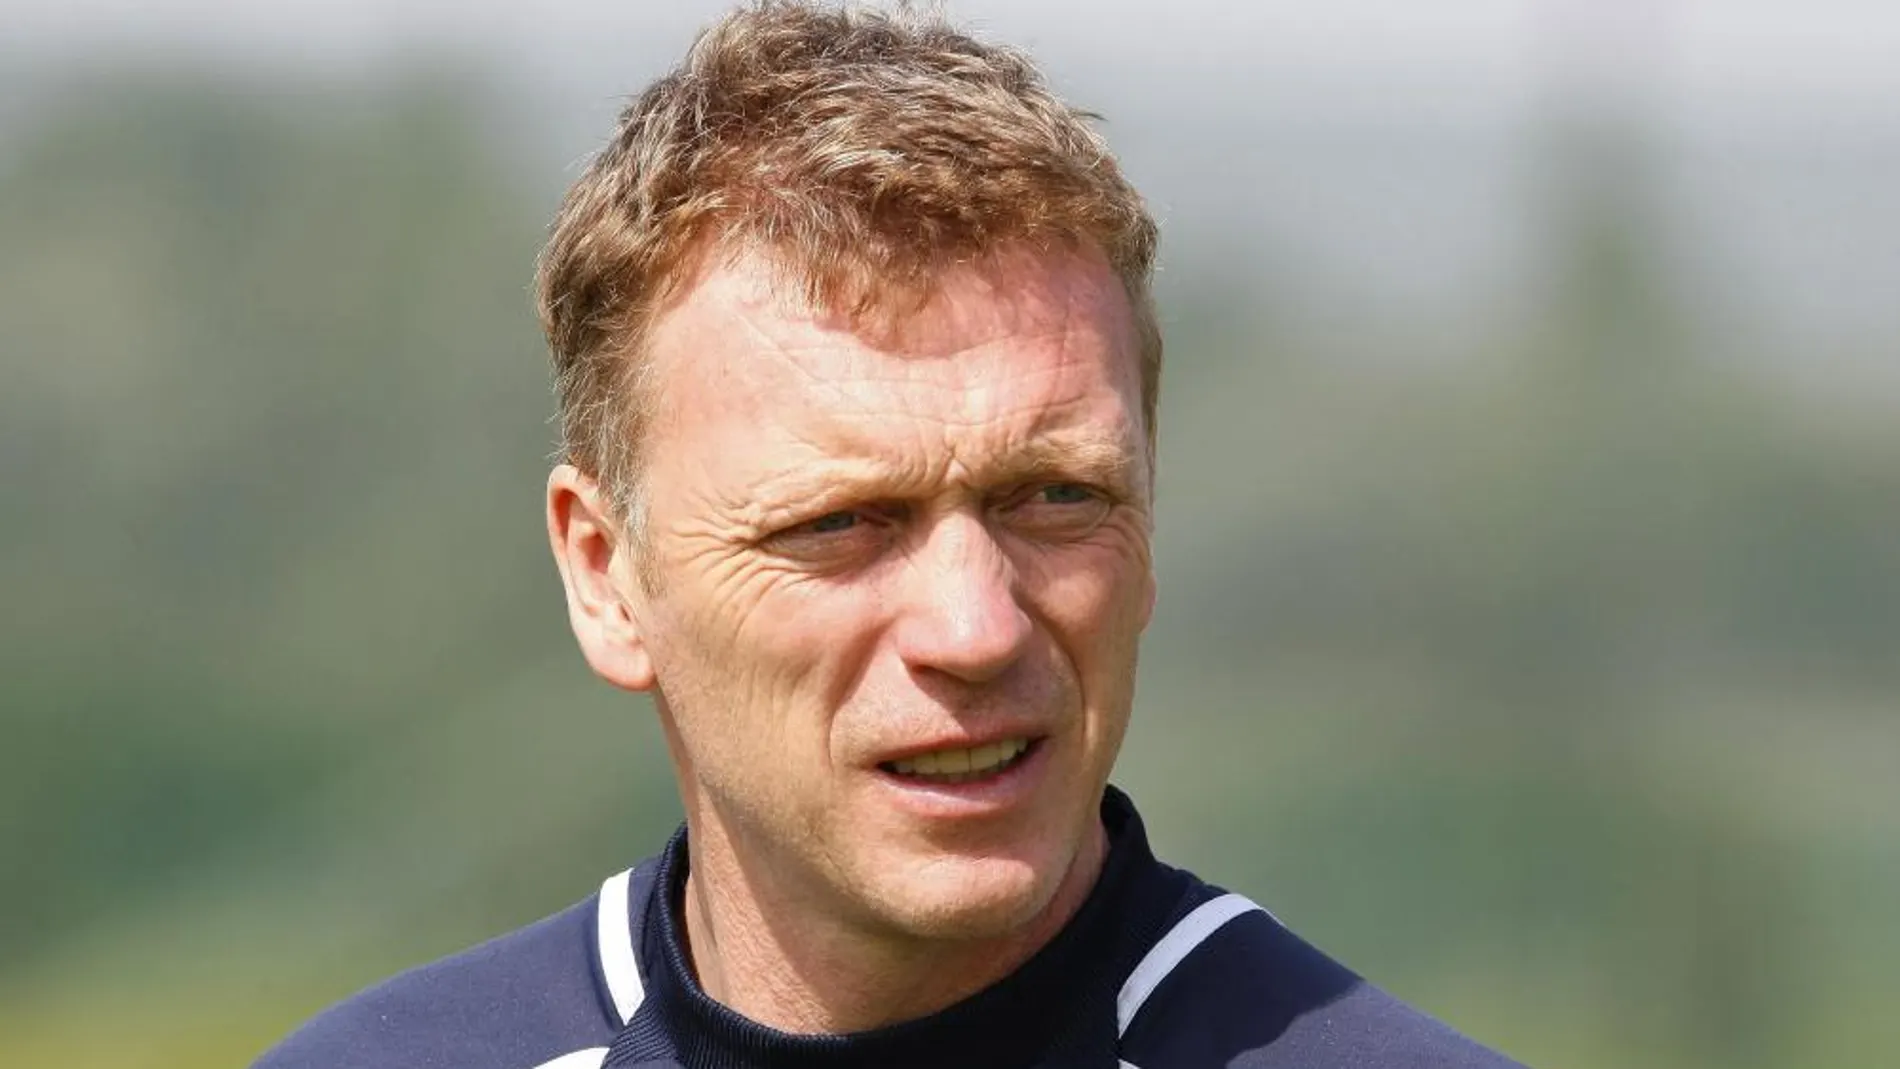 El técnico de Glasgow, David Moyes, es uno de los entrenadores británicos de mayor relevancia en los últimos tiempos